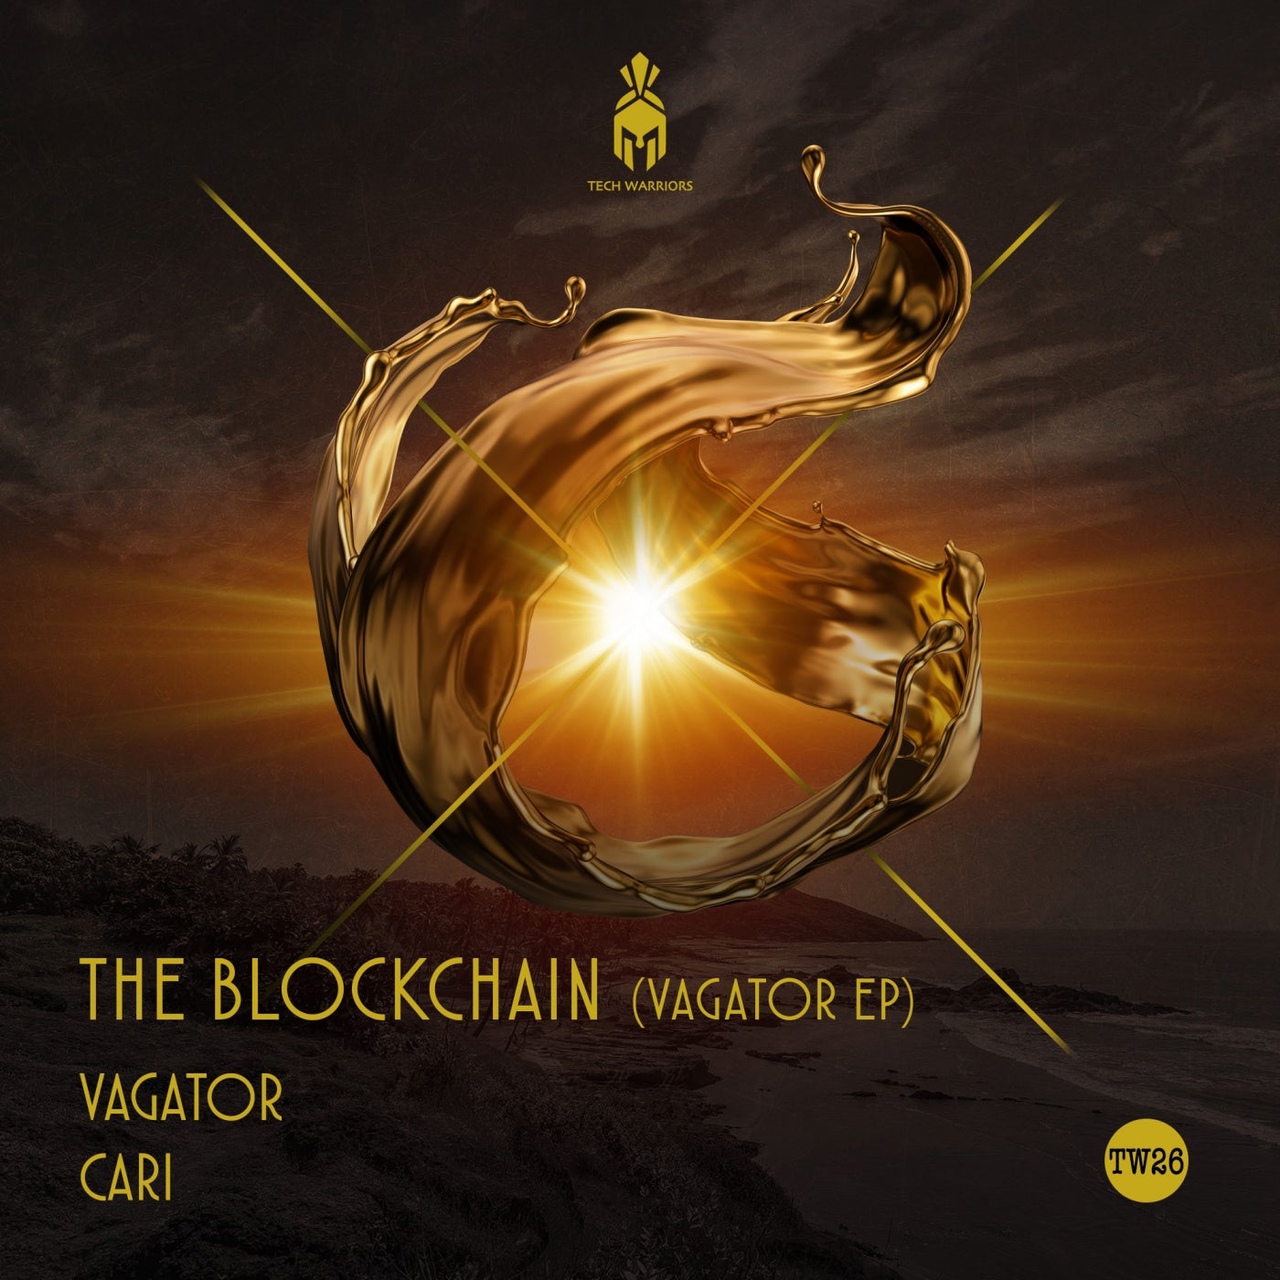 The Blockchain - Cari (Original Mix)